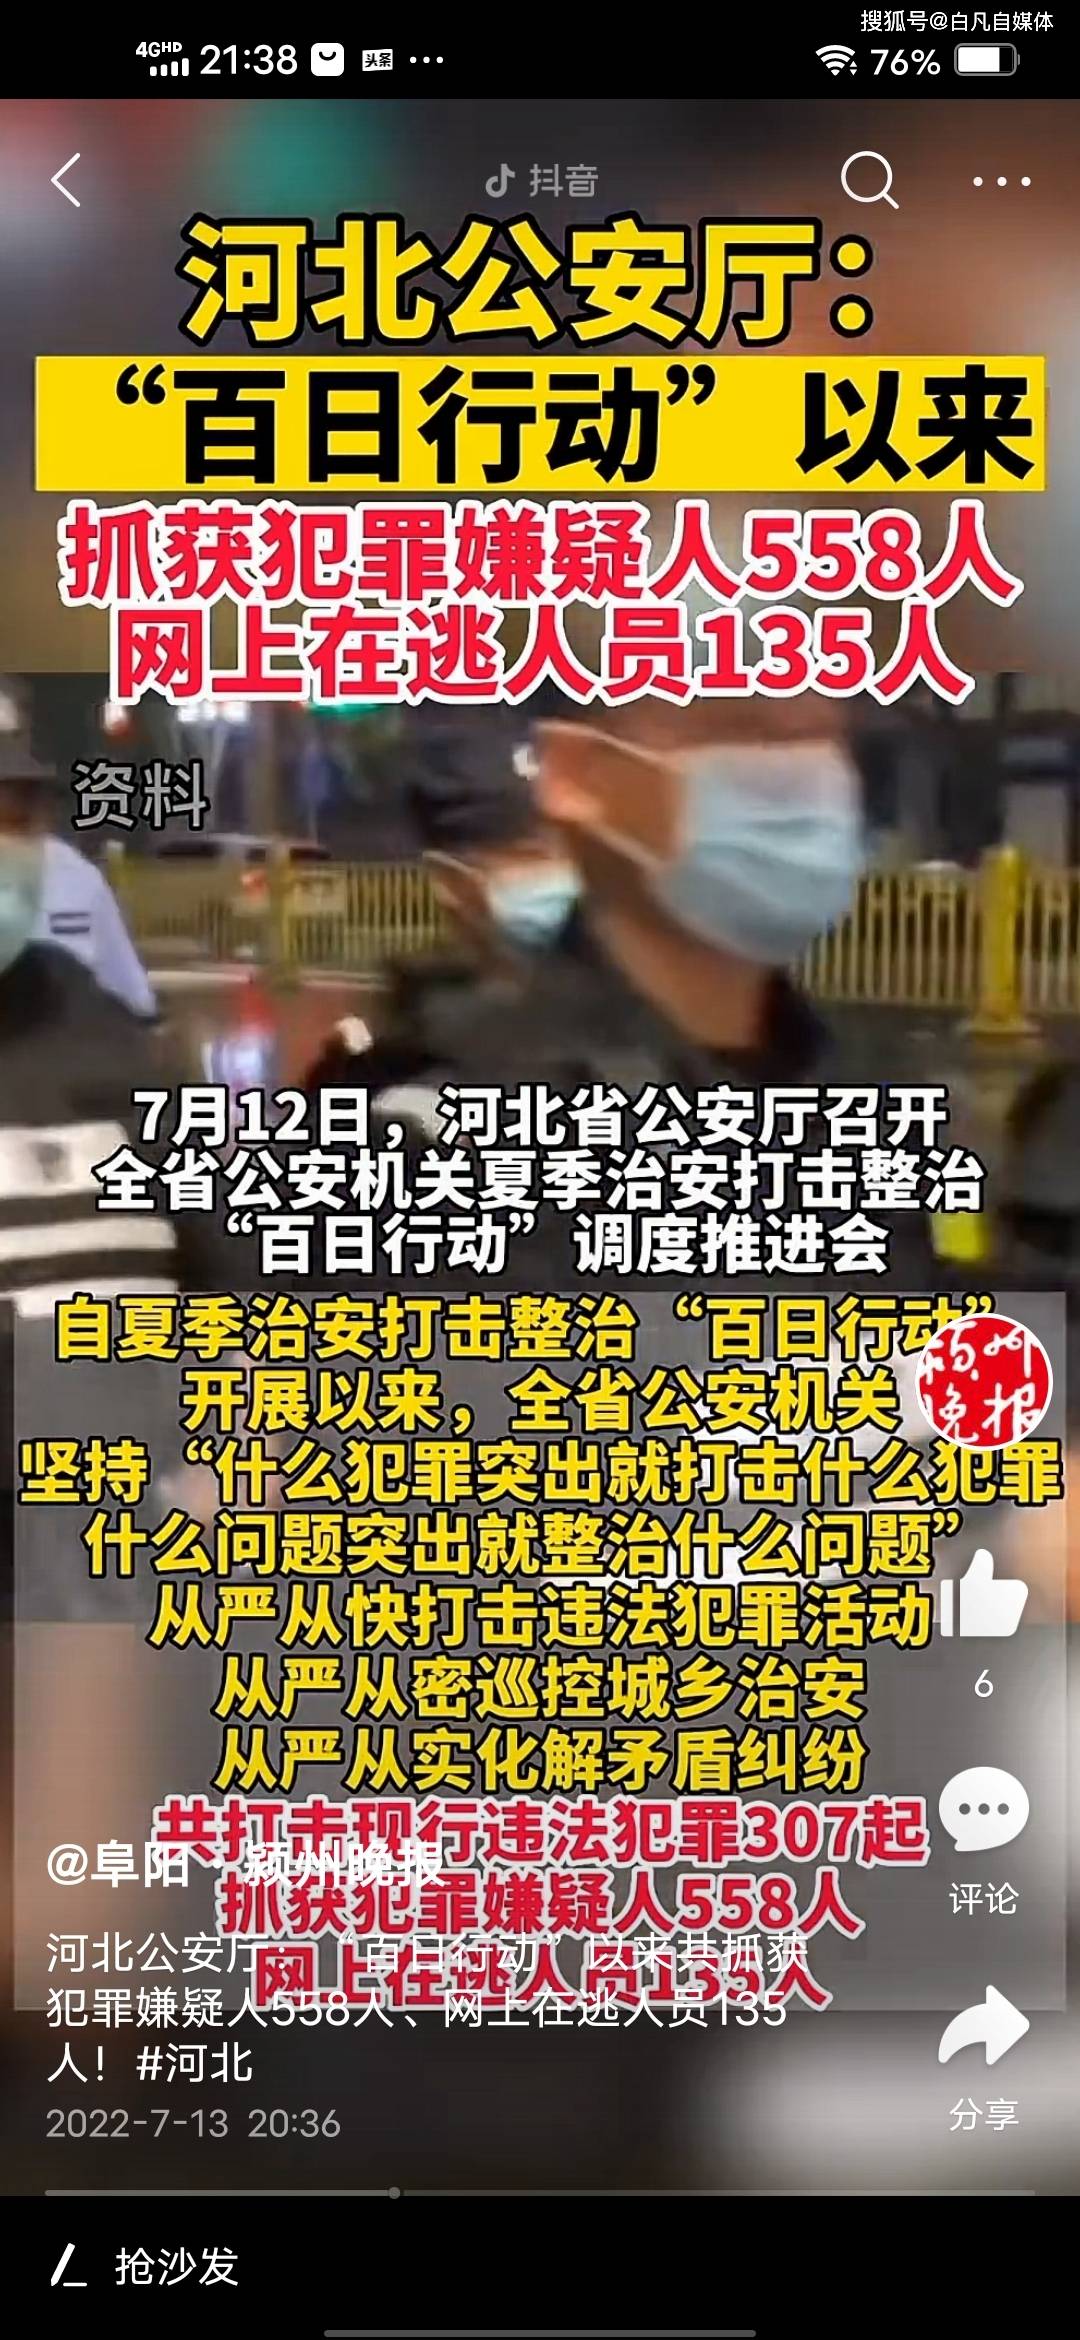 河北公安厅：“百日行动”以来共抓获犯罪嫌疑人558人 为什么网友并不买账